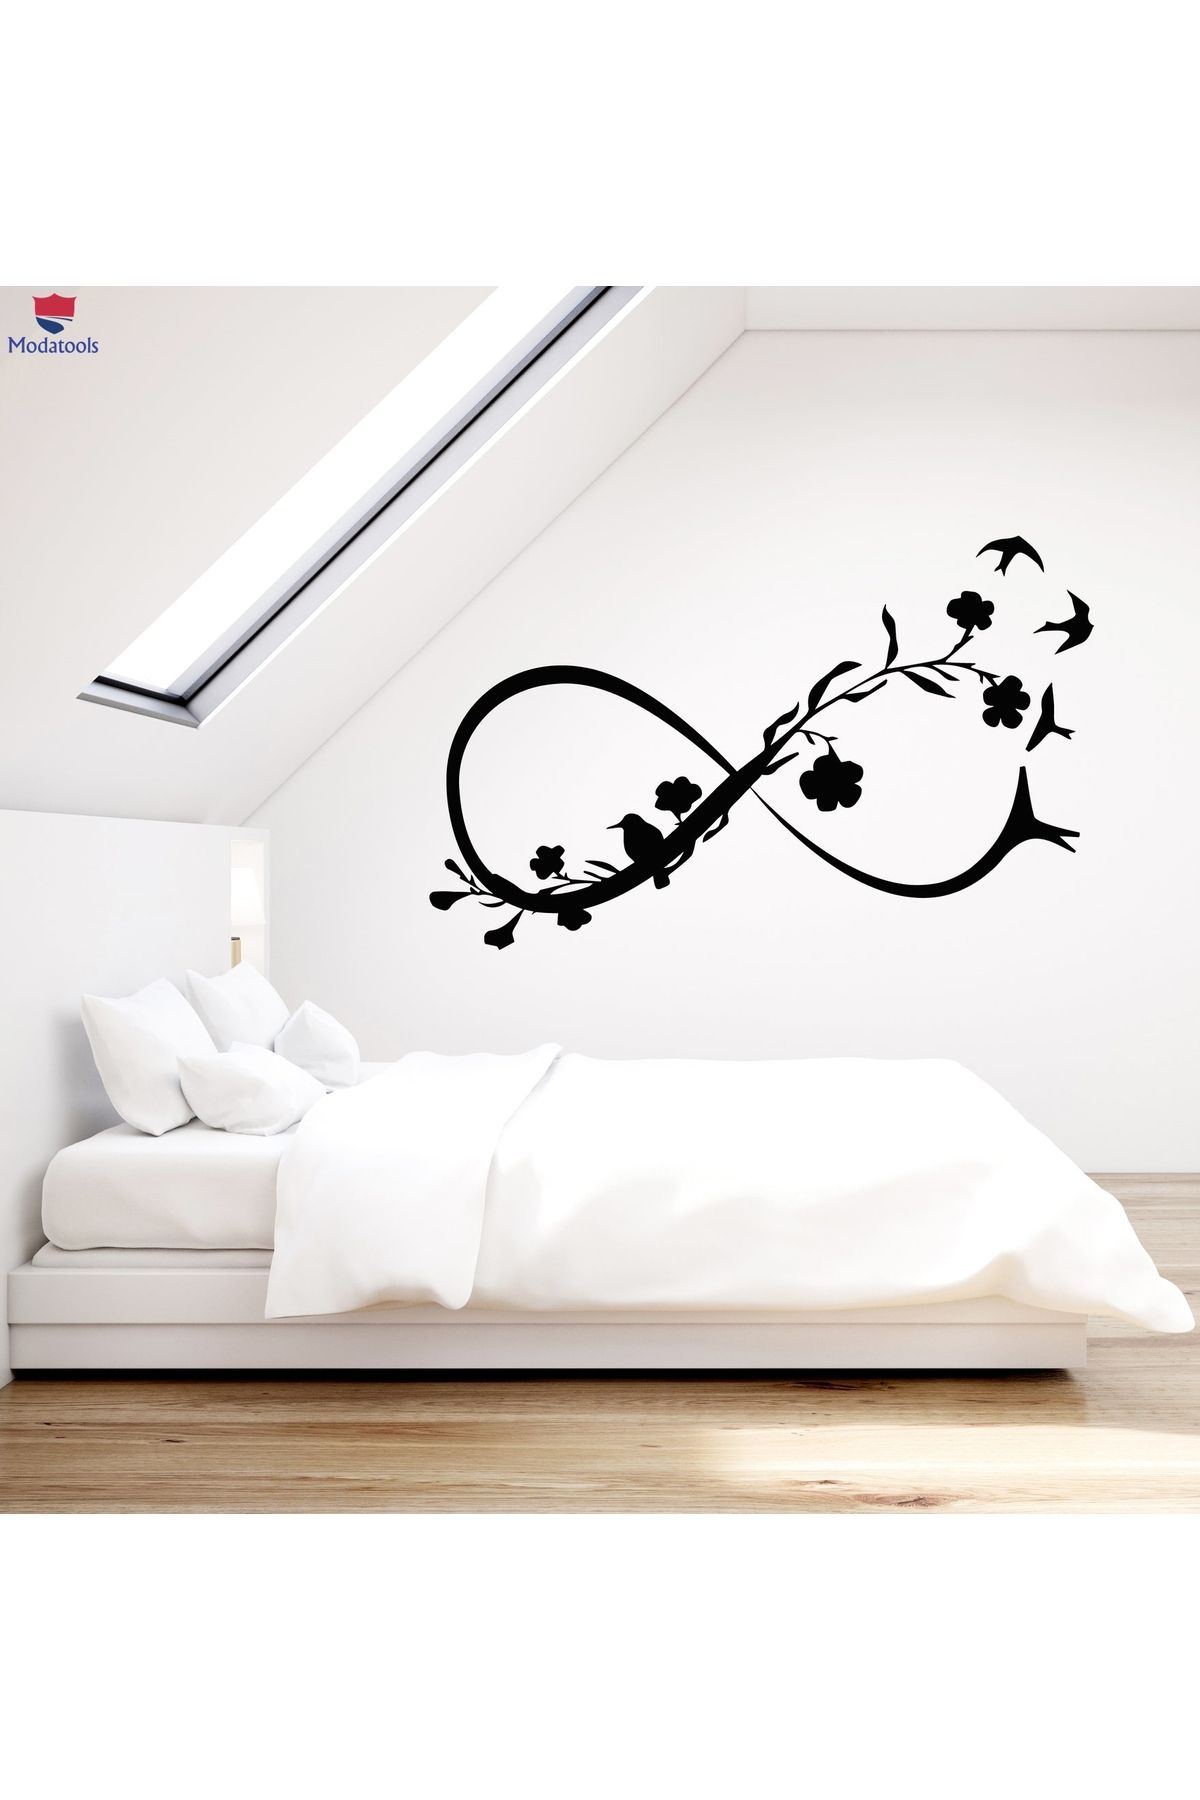 Modatools Oturma Odası, Yatak Odası Duvar Sticker Sonsuzluk Sembolü Odası Çiçekler Kuşlar Çıkartma